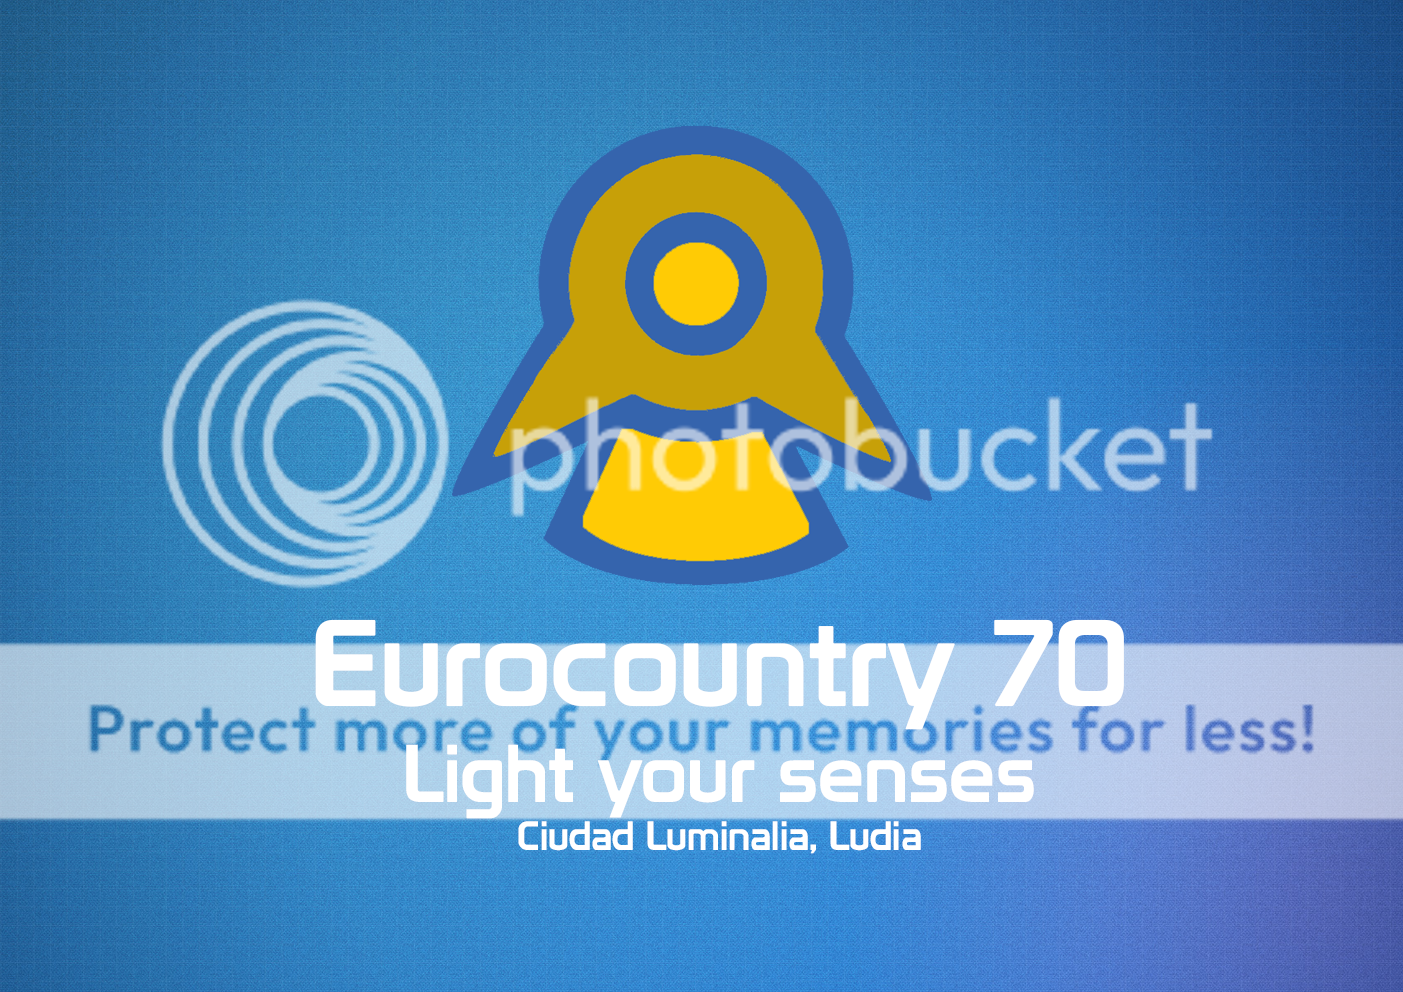 [PRESENTACIÓN] Eurocountry 70: Light your senses 06271290-1ecd-4576-84e7-d40a19d96ebf-original